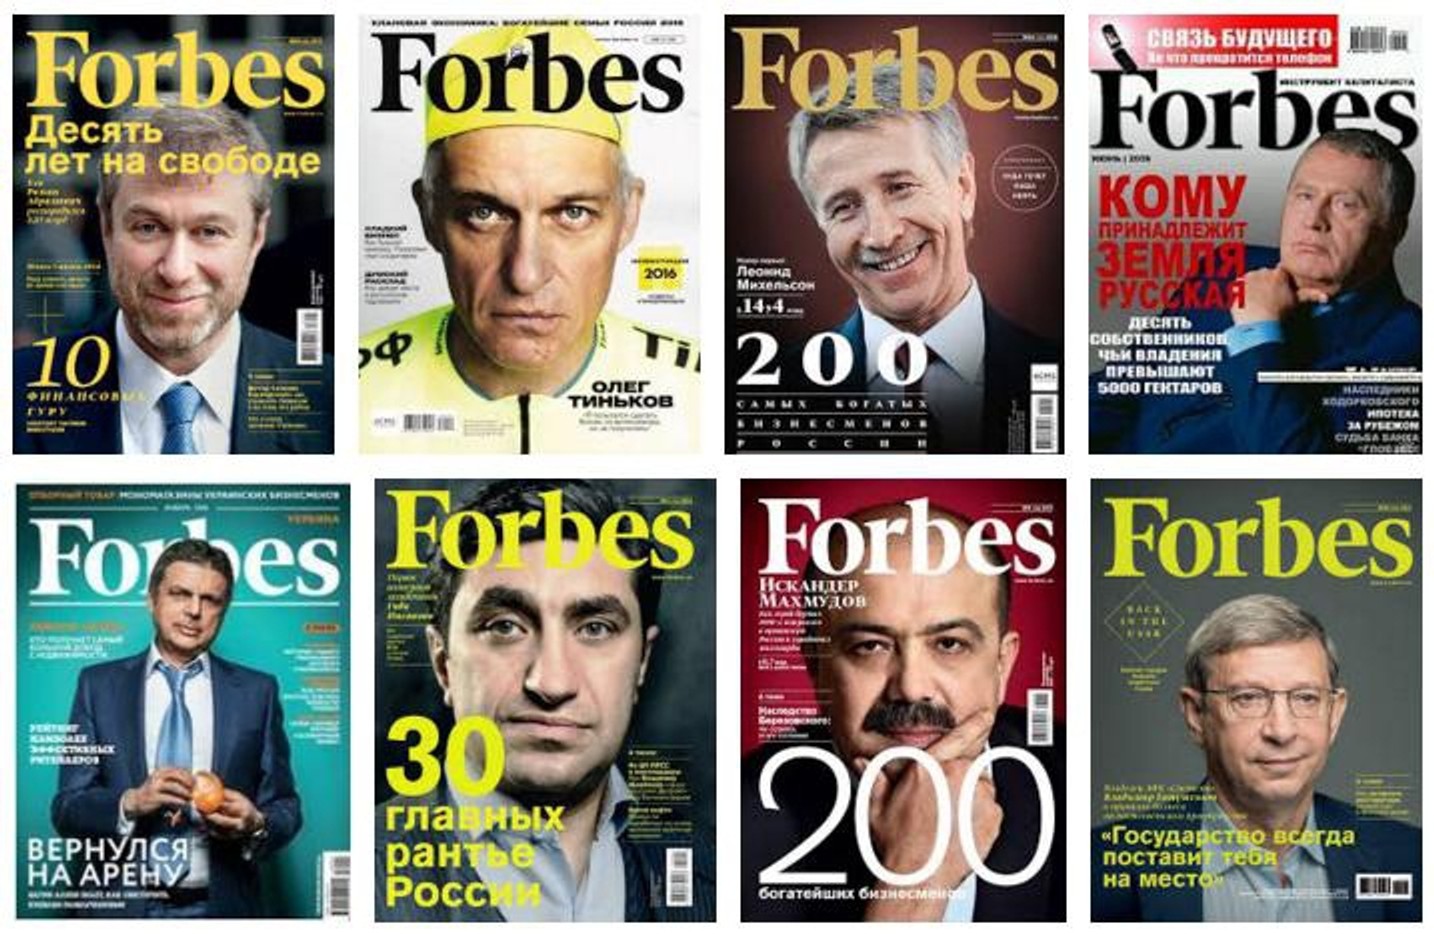 Российский Forbes приостанавливает выпуск бумажного журнала